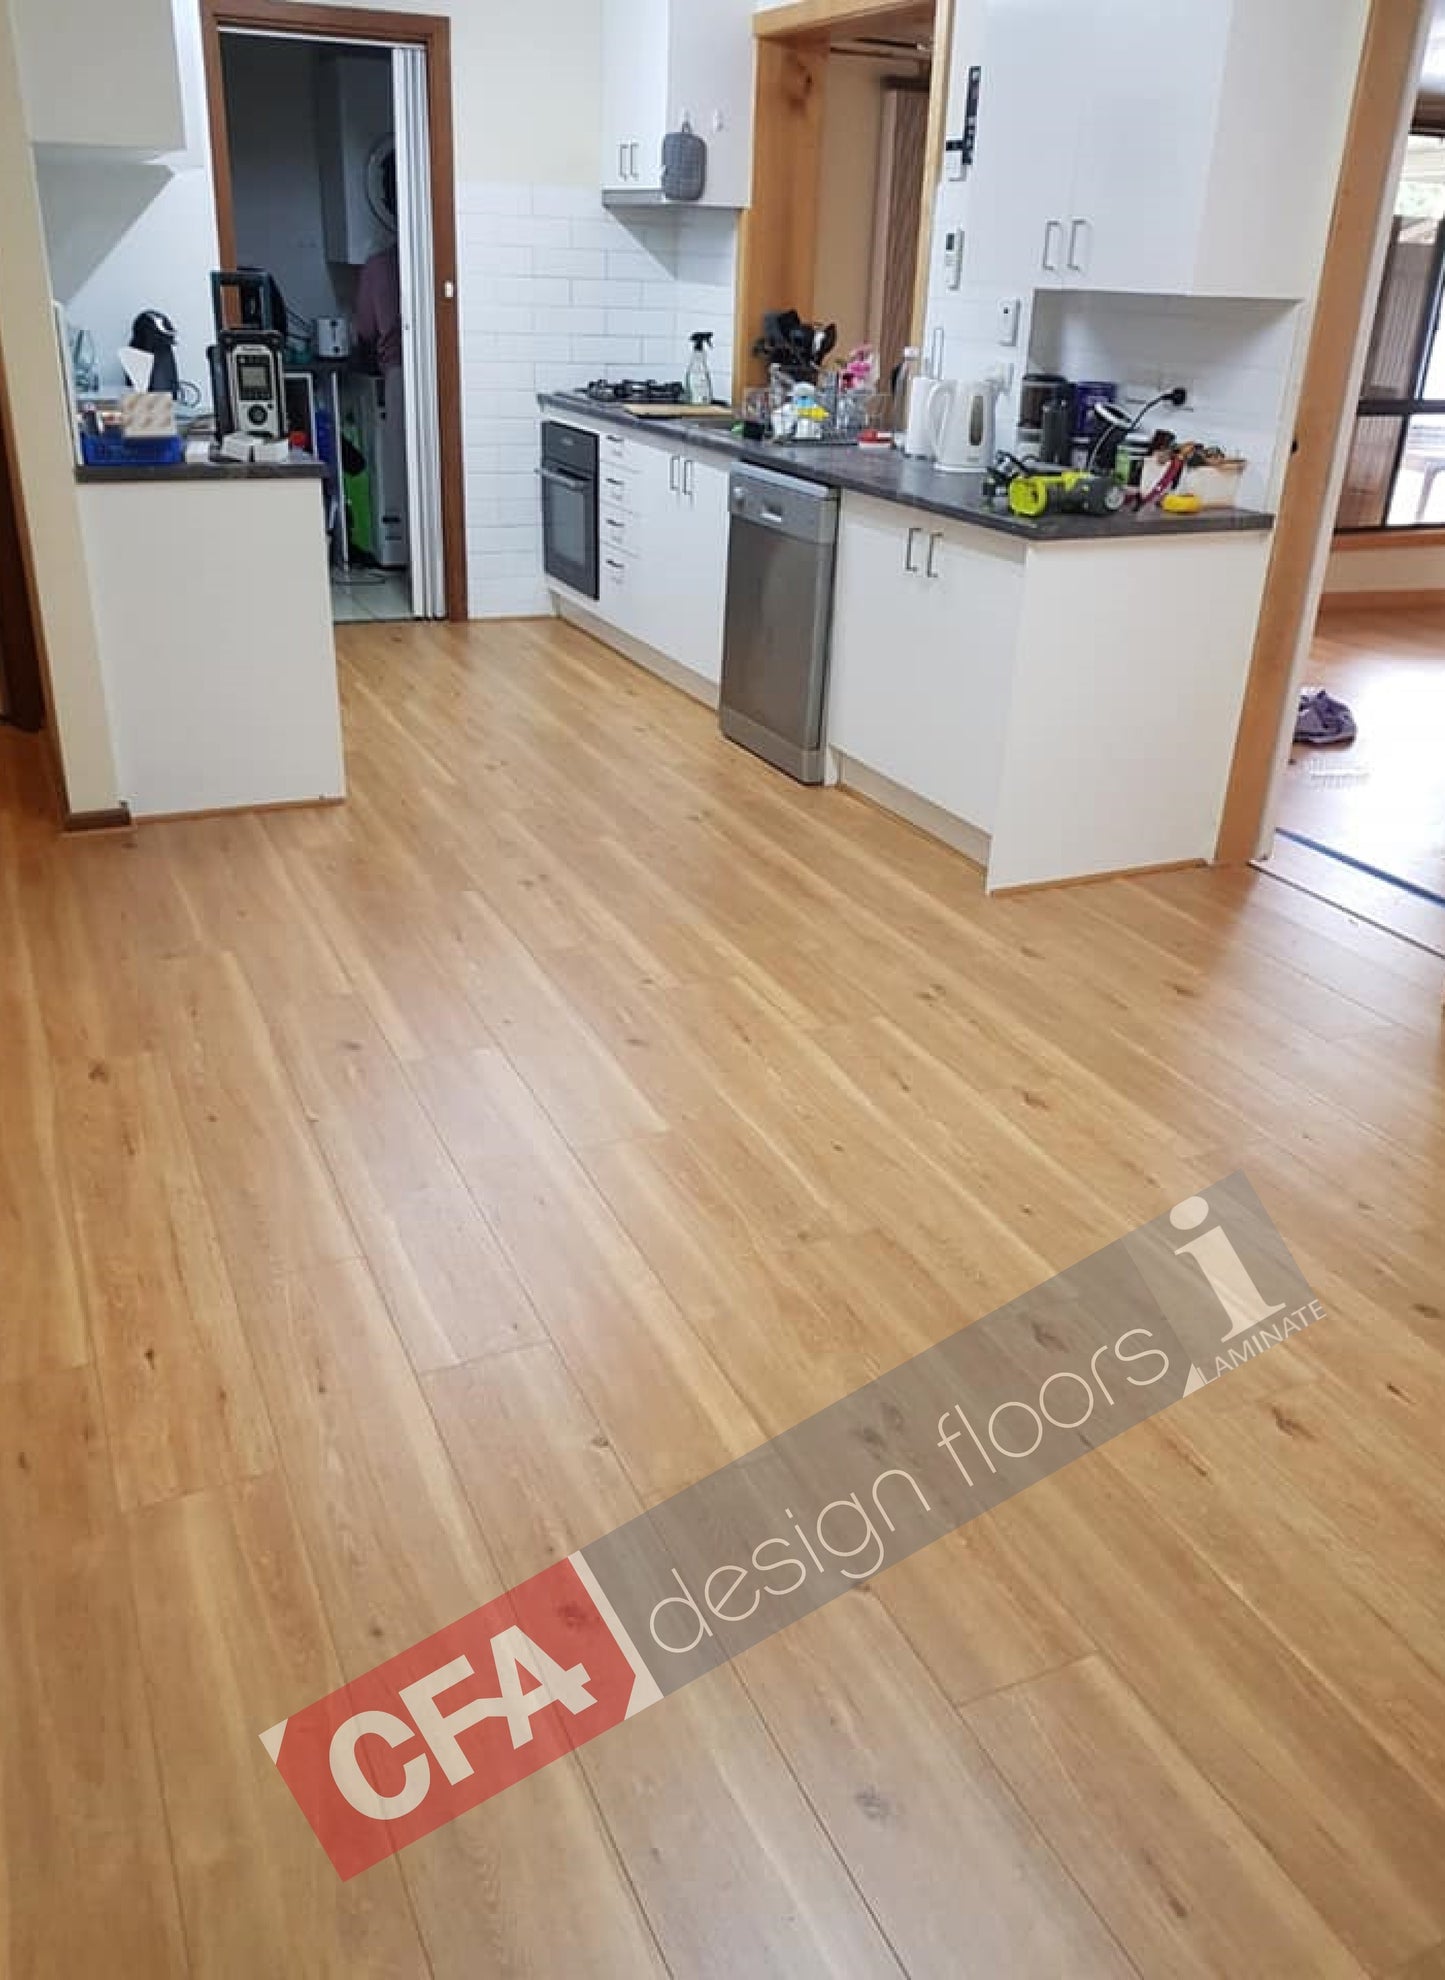 8mm New Oak Laminate Floor Boards